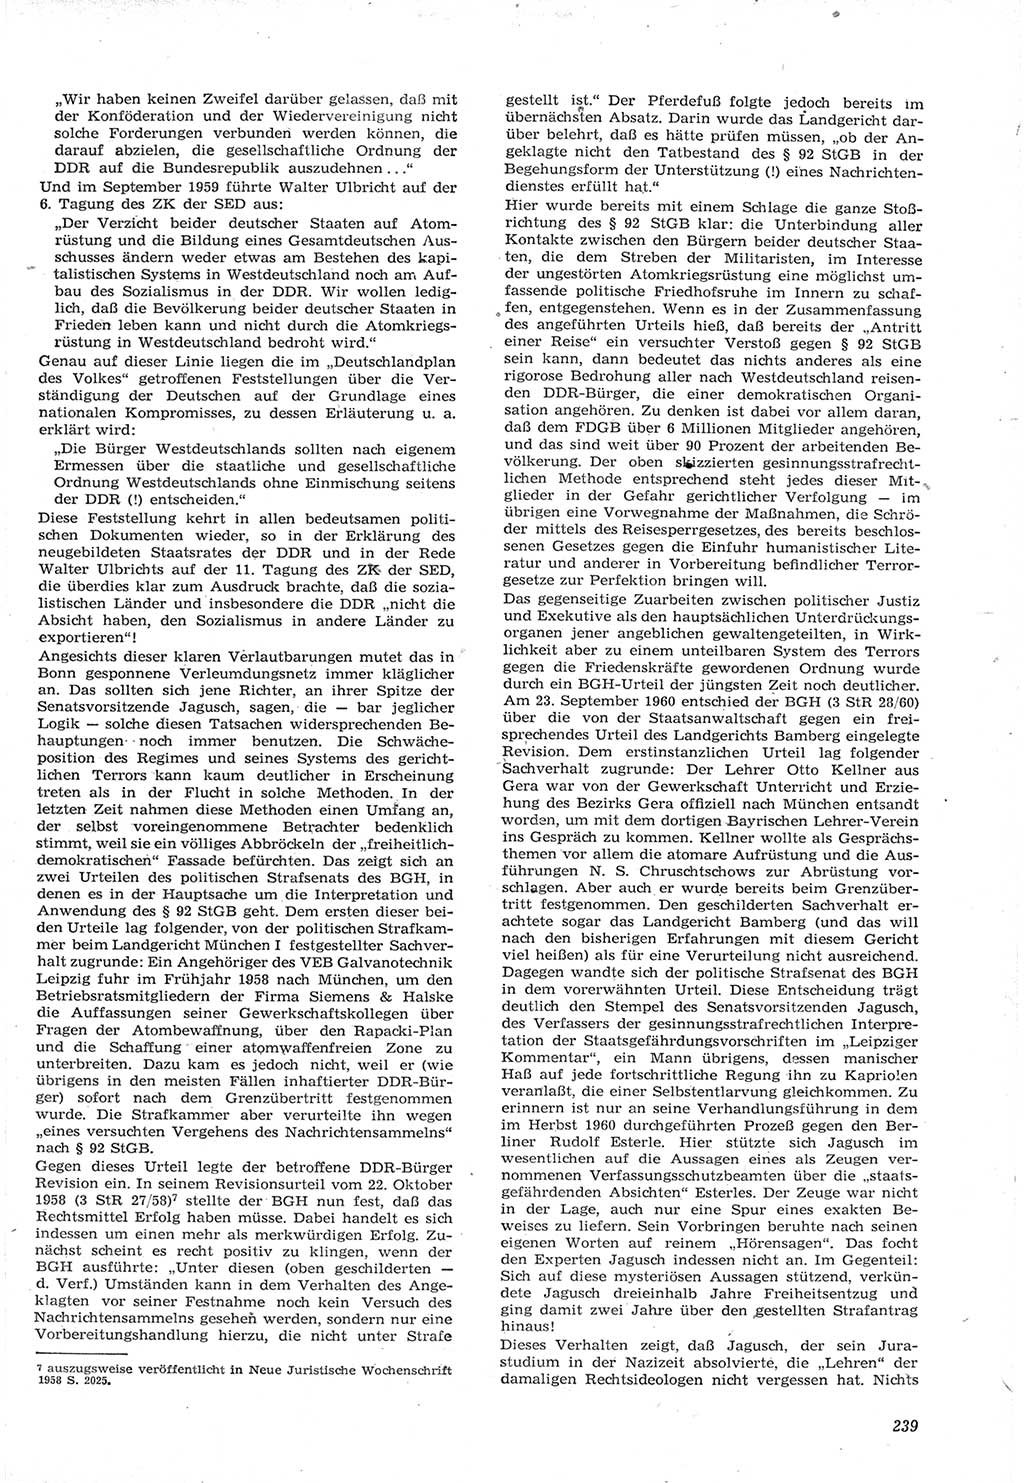 Neue Justiz (NJ), Zeitschrift für Recht und Rechtswissenschaft [Deutsche Demokratische Republik (DDR)], 15. Jahrgang 1961, Seite 239 (NJ DDR 1961, S. 239)